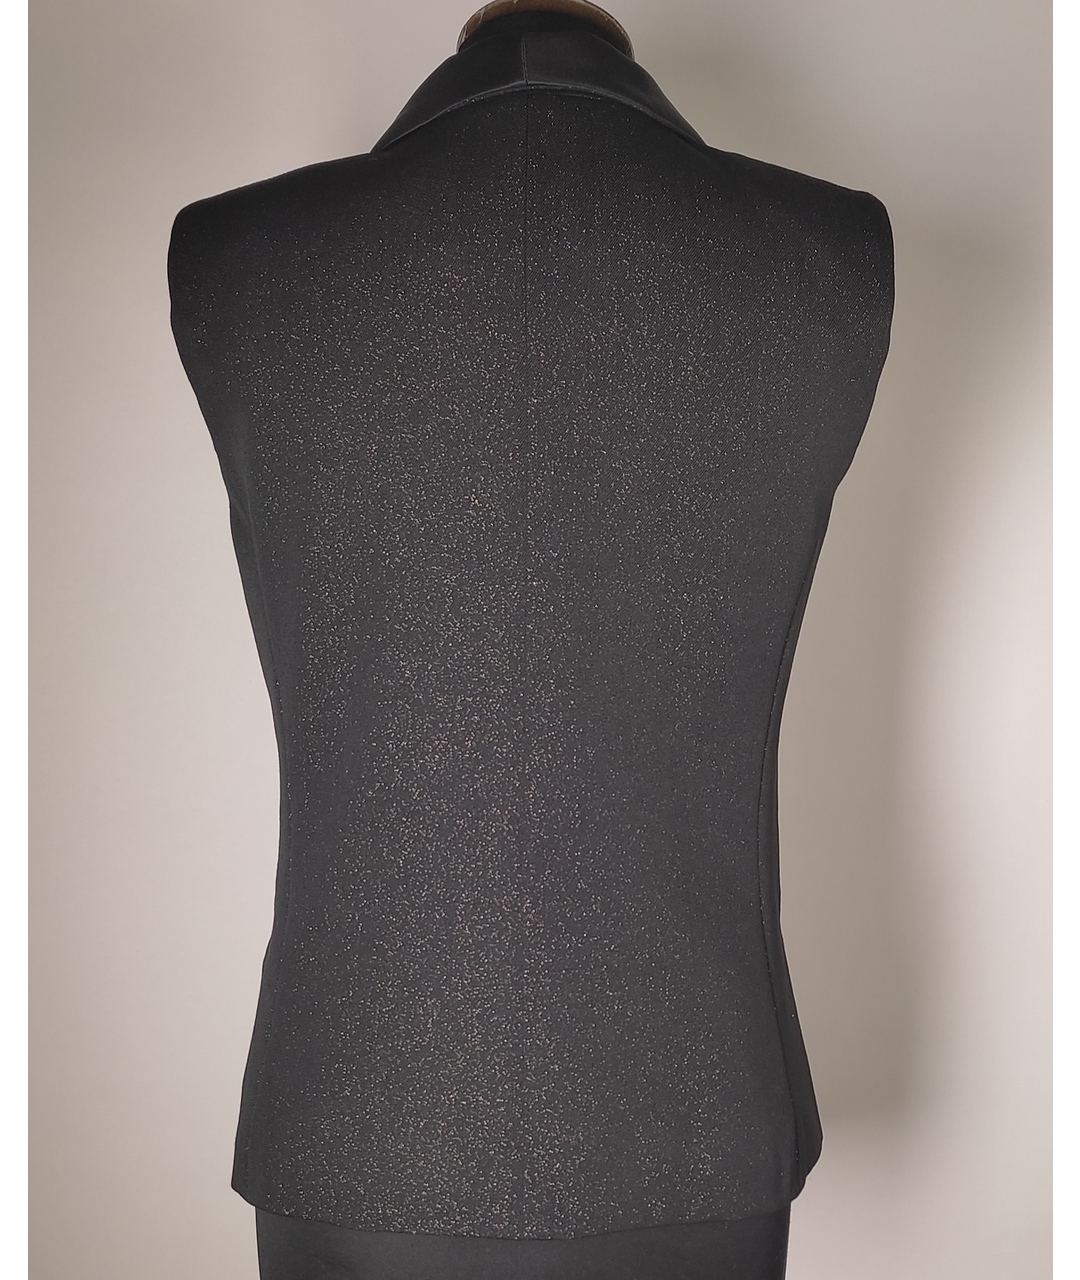 CHANEL PRE-OWNED Черный шерстяной жакет/пиджак, фото 3